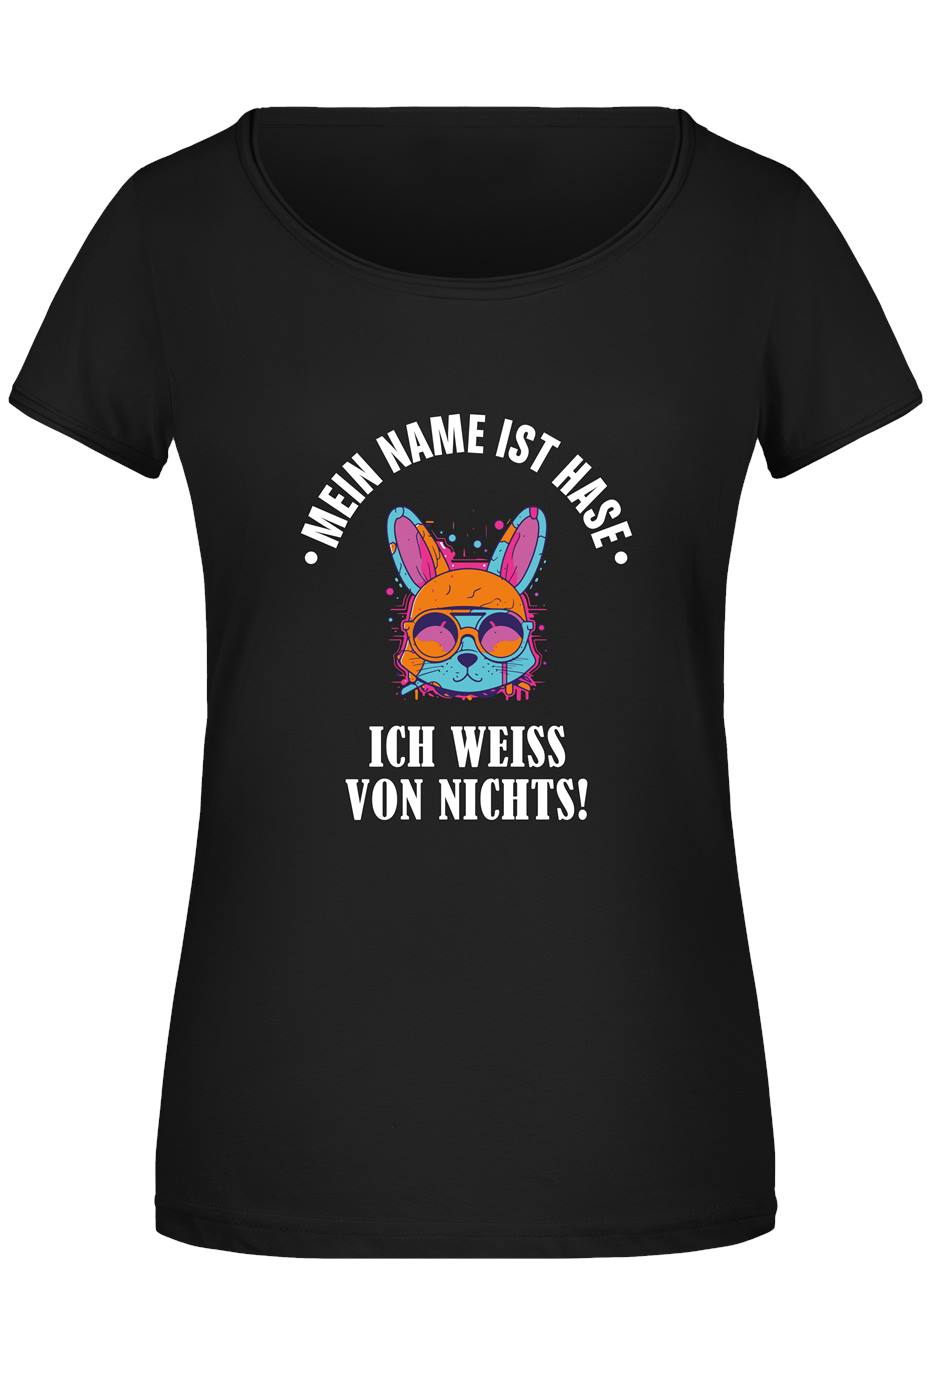 T-Shirt Damen - Mein Name ist Hase, ich weiß von nichts!